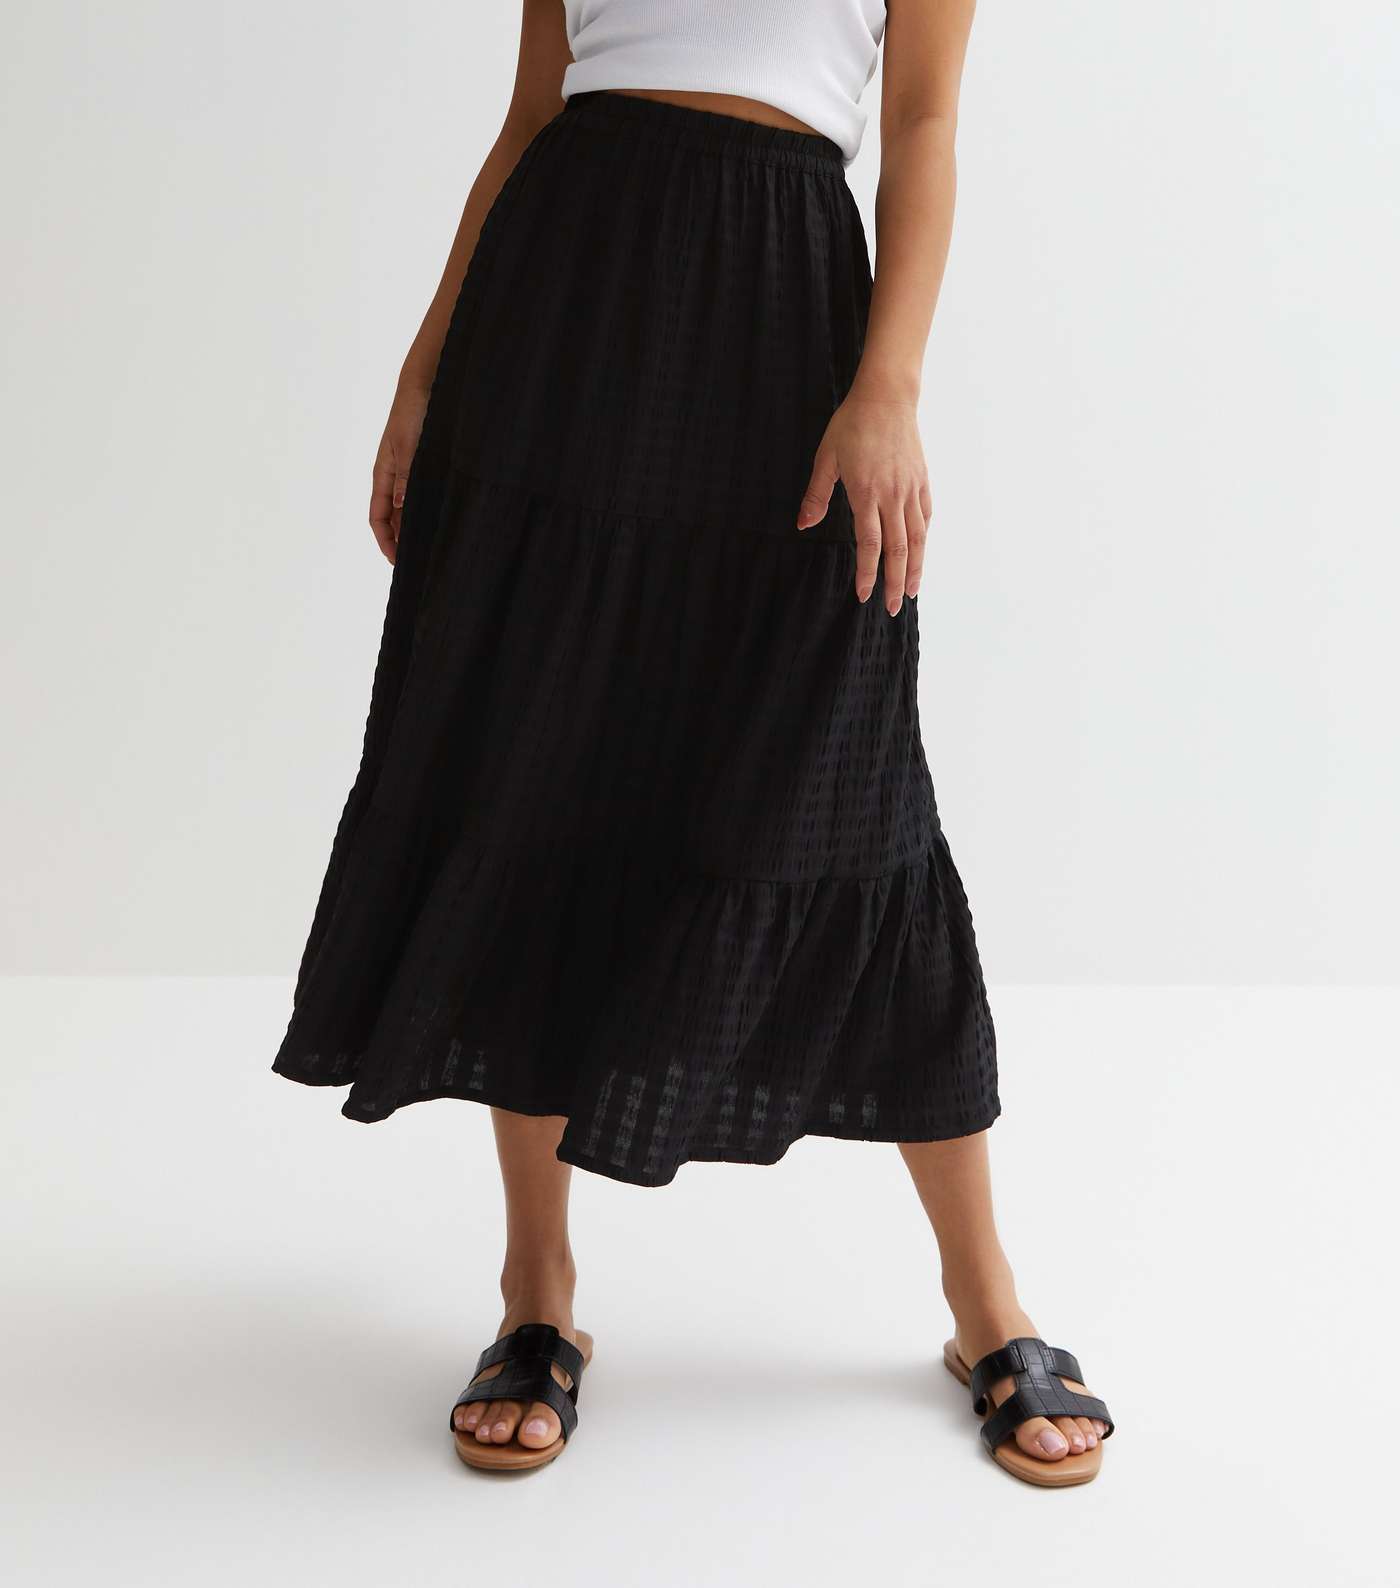 Petite Black Textured Tiered Midi Skirt Image 2